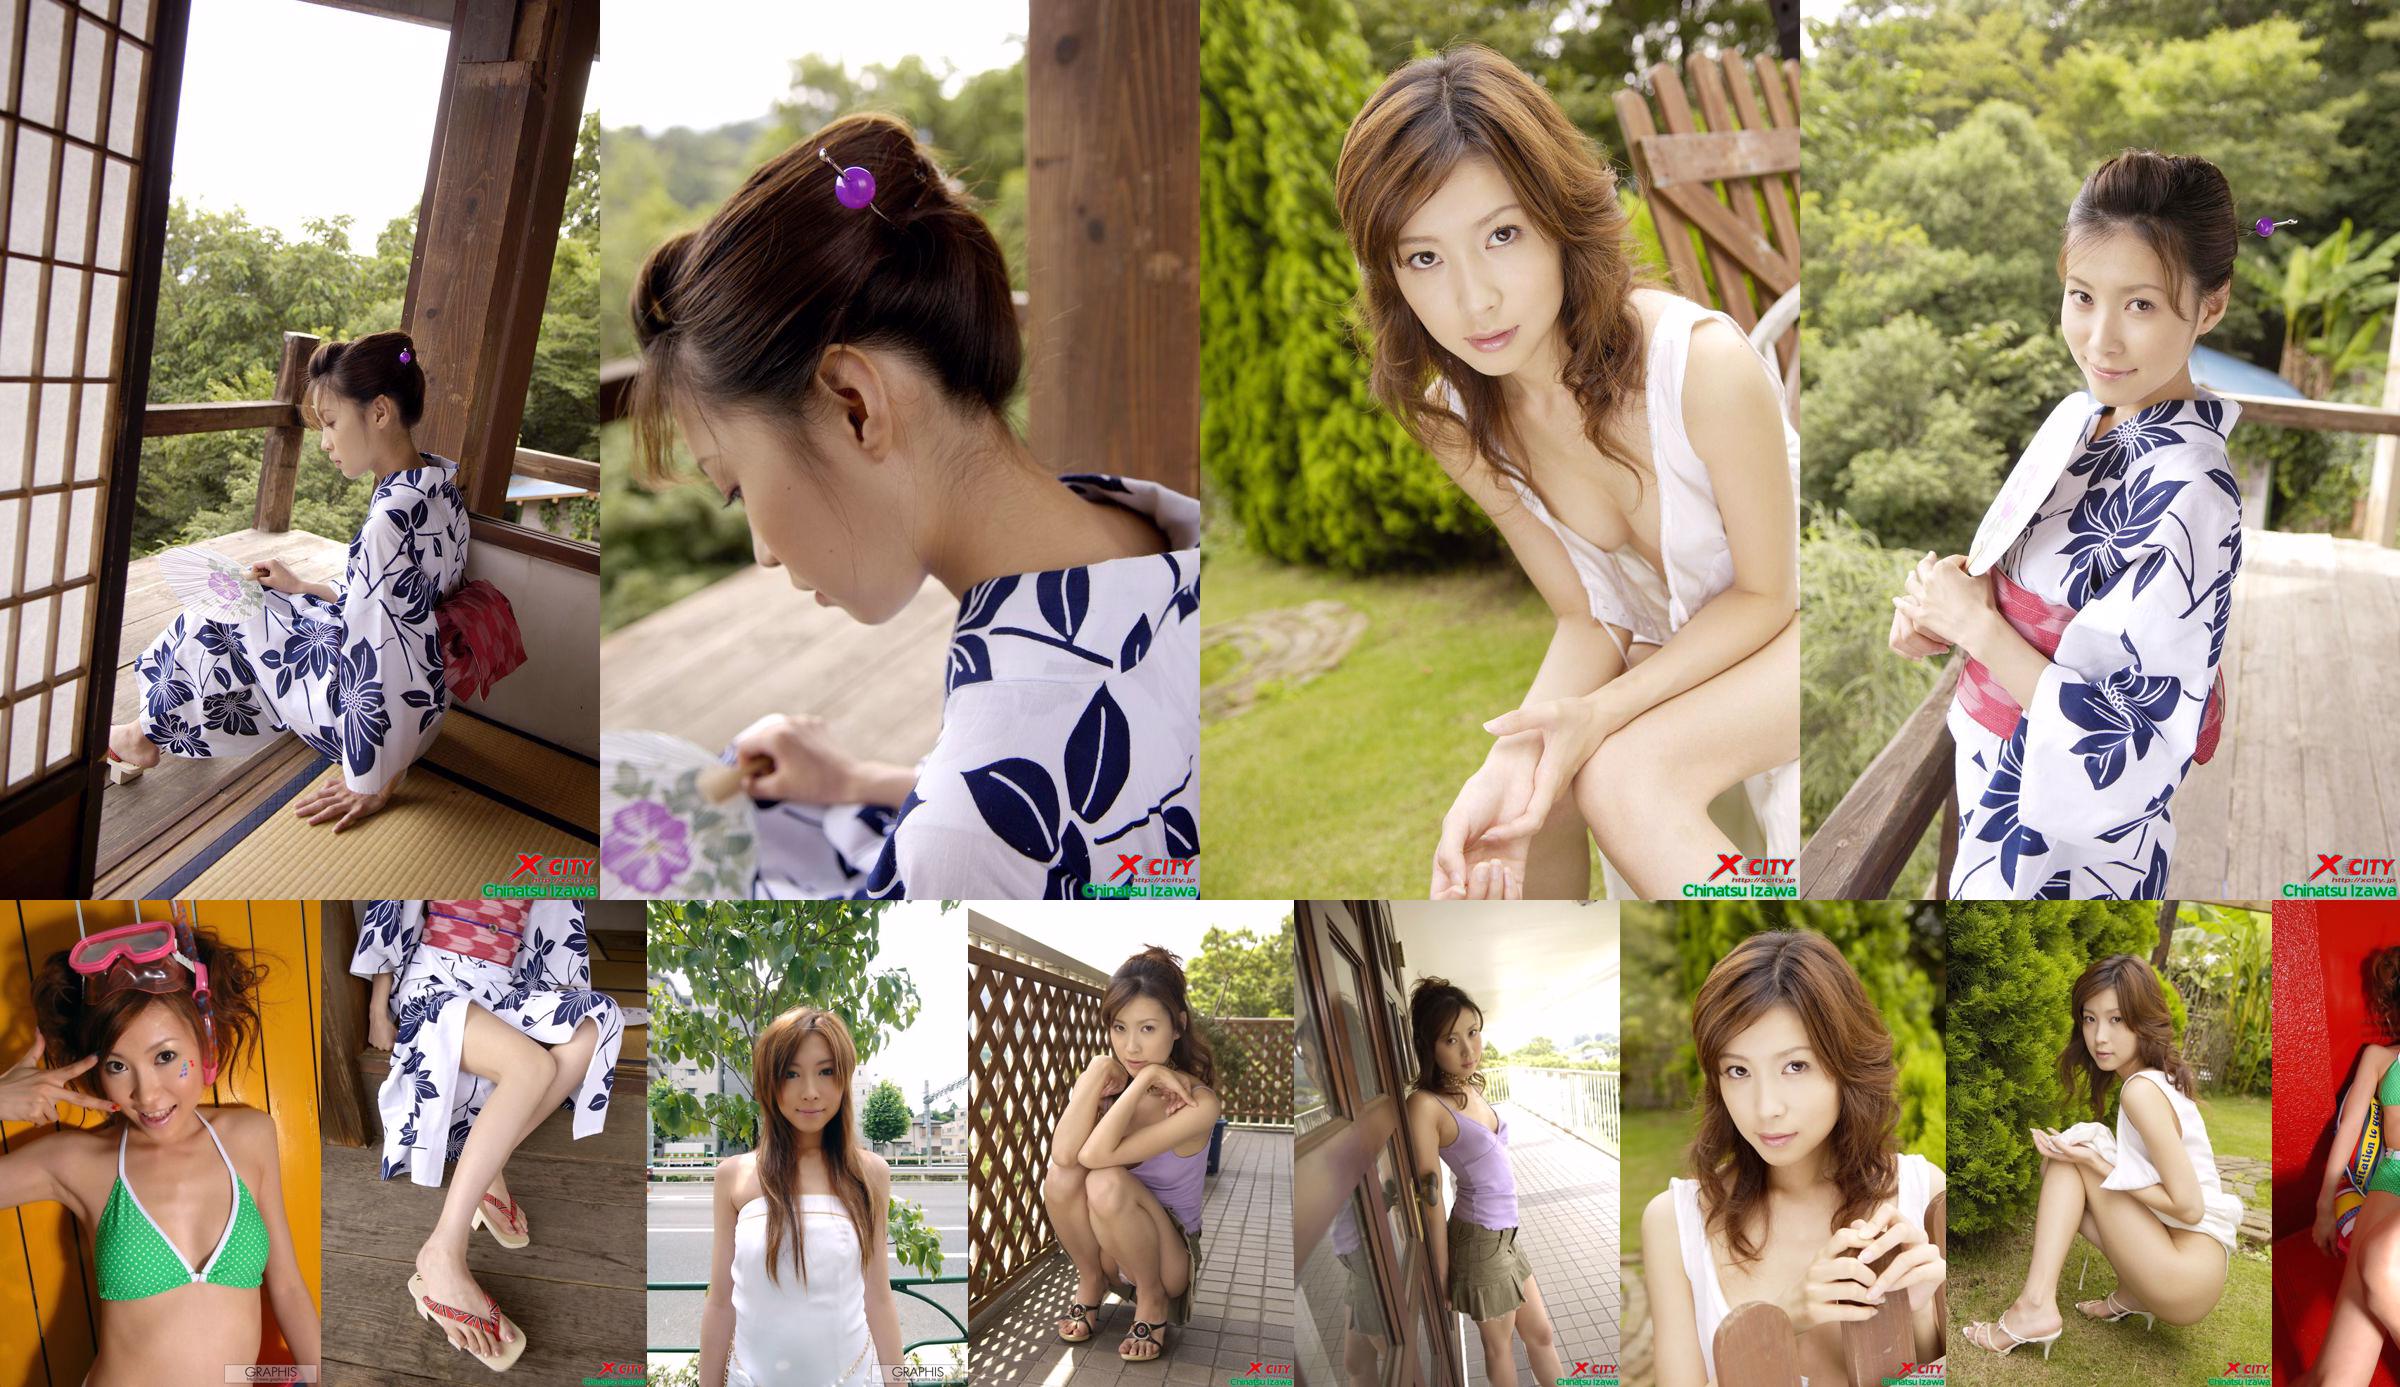 [X-City] WEB No.020 Izawa Chika "Secret Summer" No.d80292 Trang 1